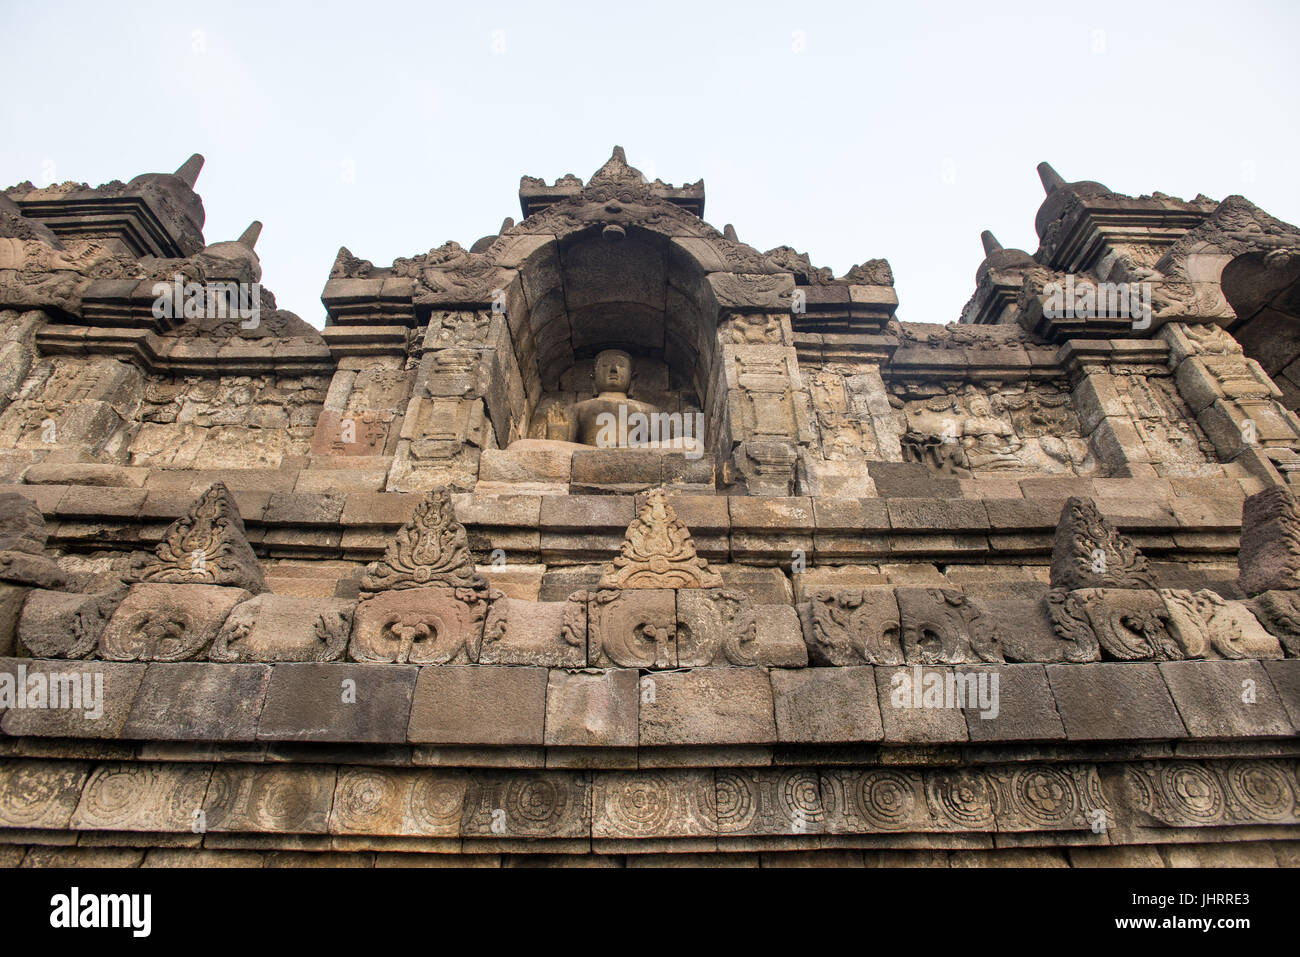 Dettagli del terzo livello di statue del tempio di Borobudur Java Indonesia. Foto Stock